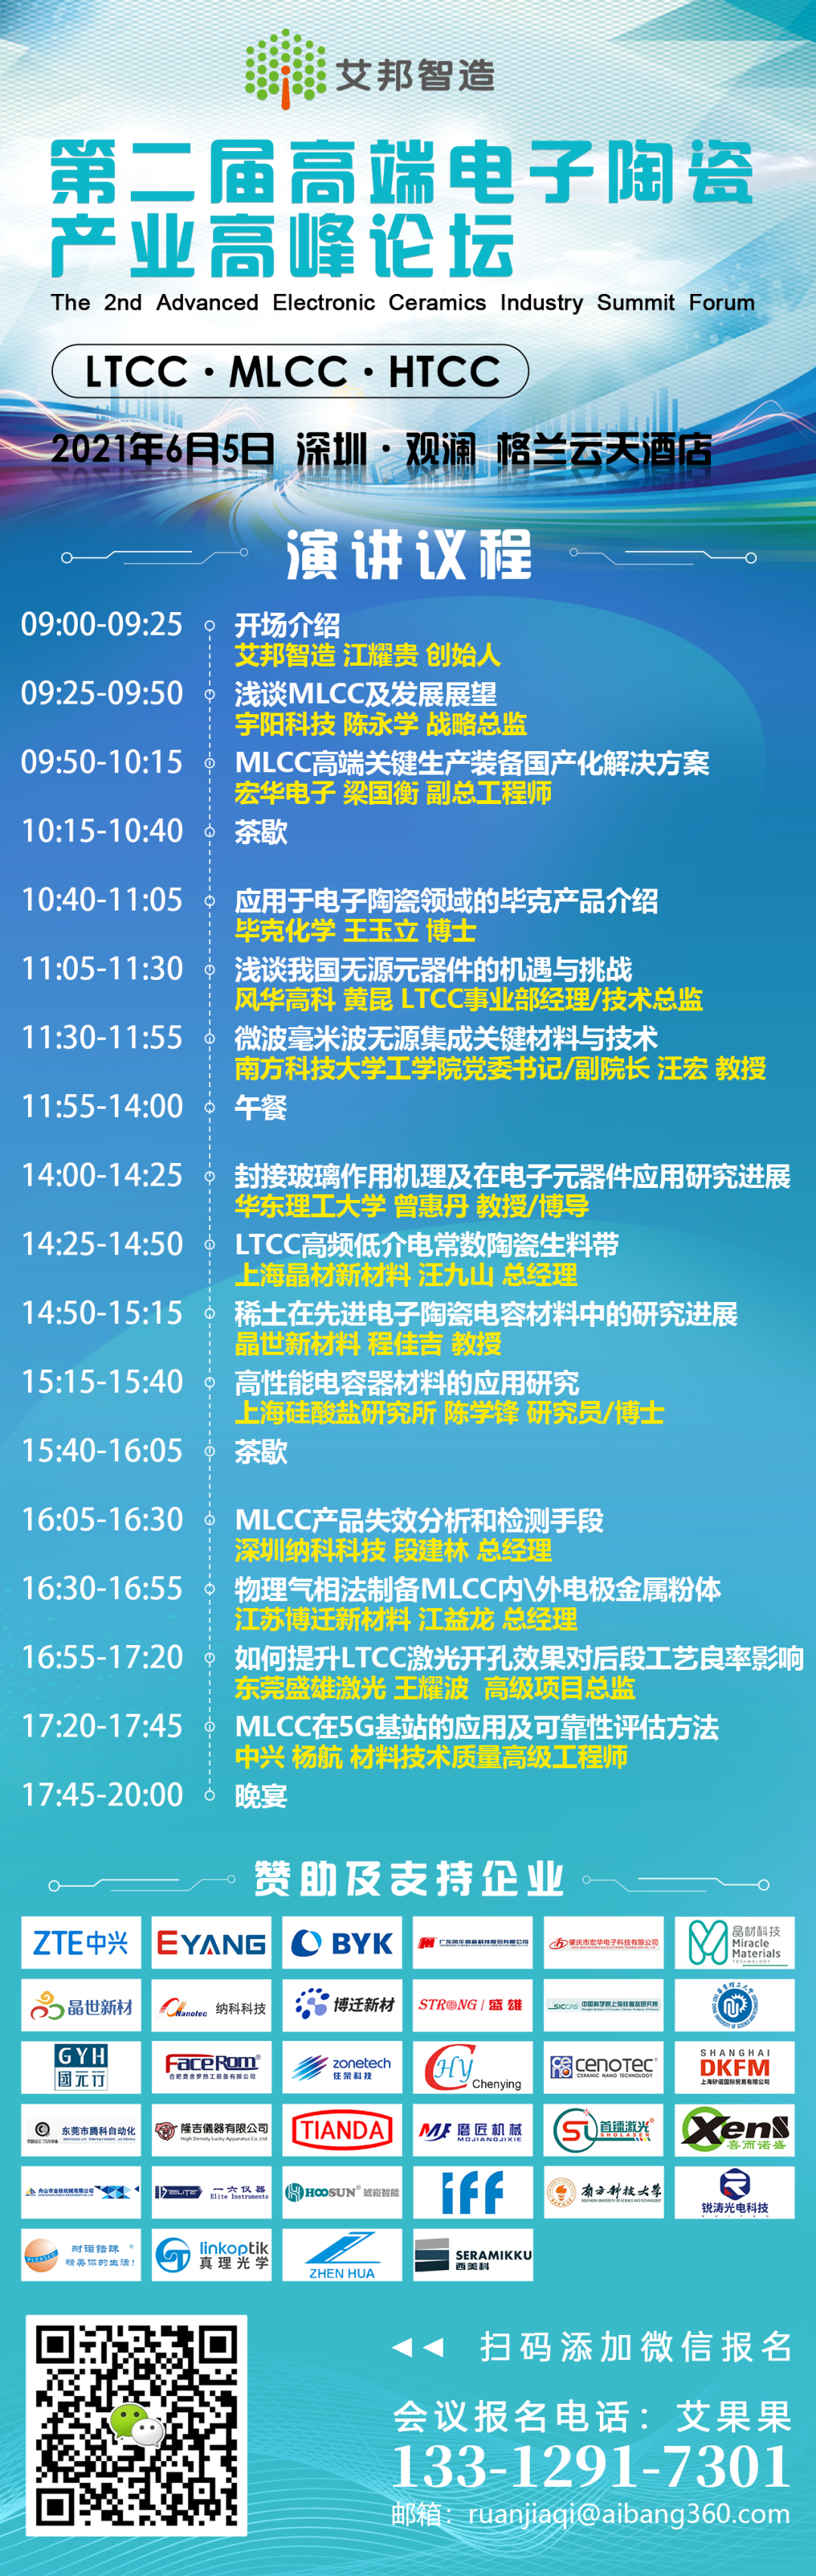 华东理工大学将出席“第二届MLCC、LTCC产业高峰论坛”并做封接玻璃作用机理及在光电器件应用主题演讲